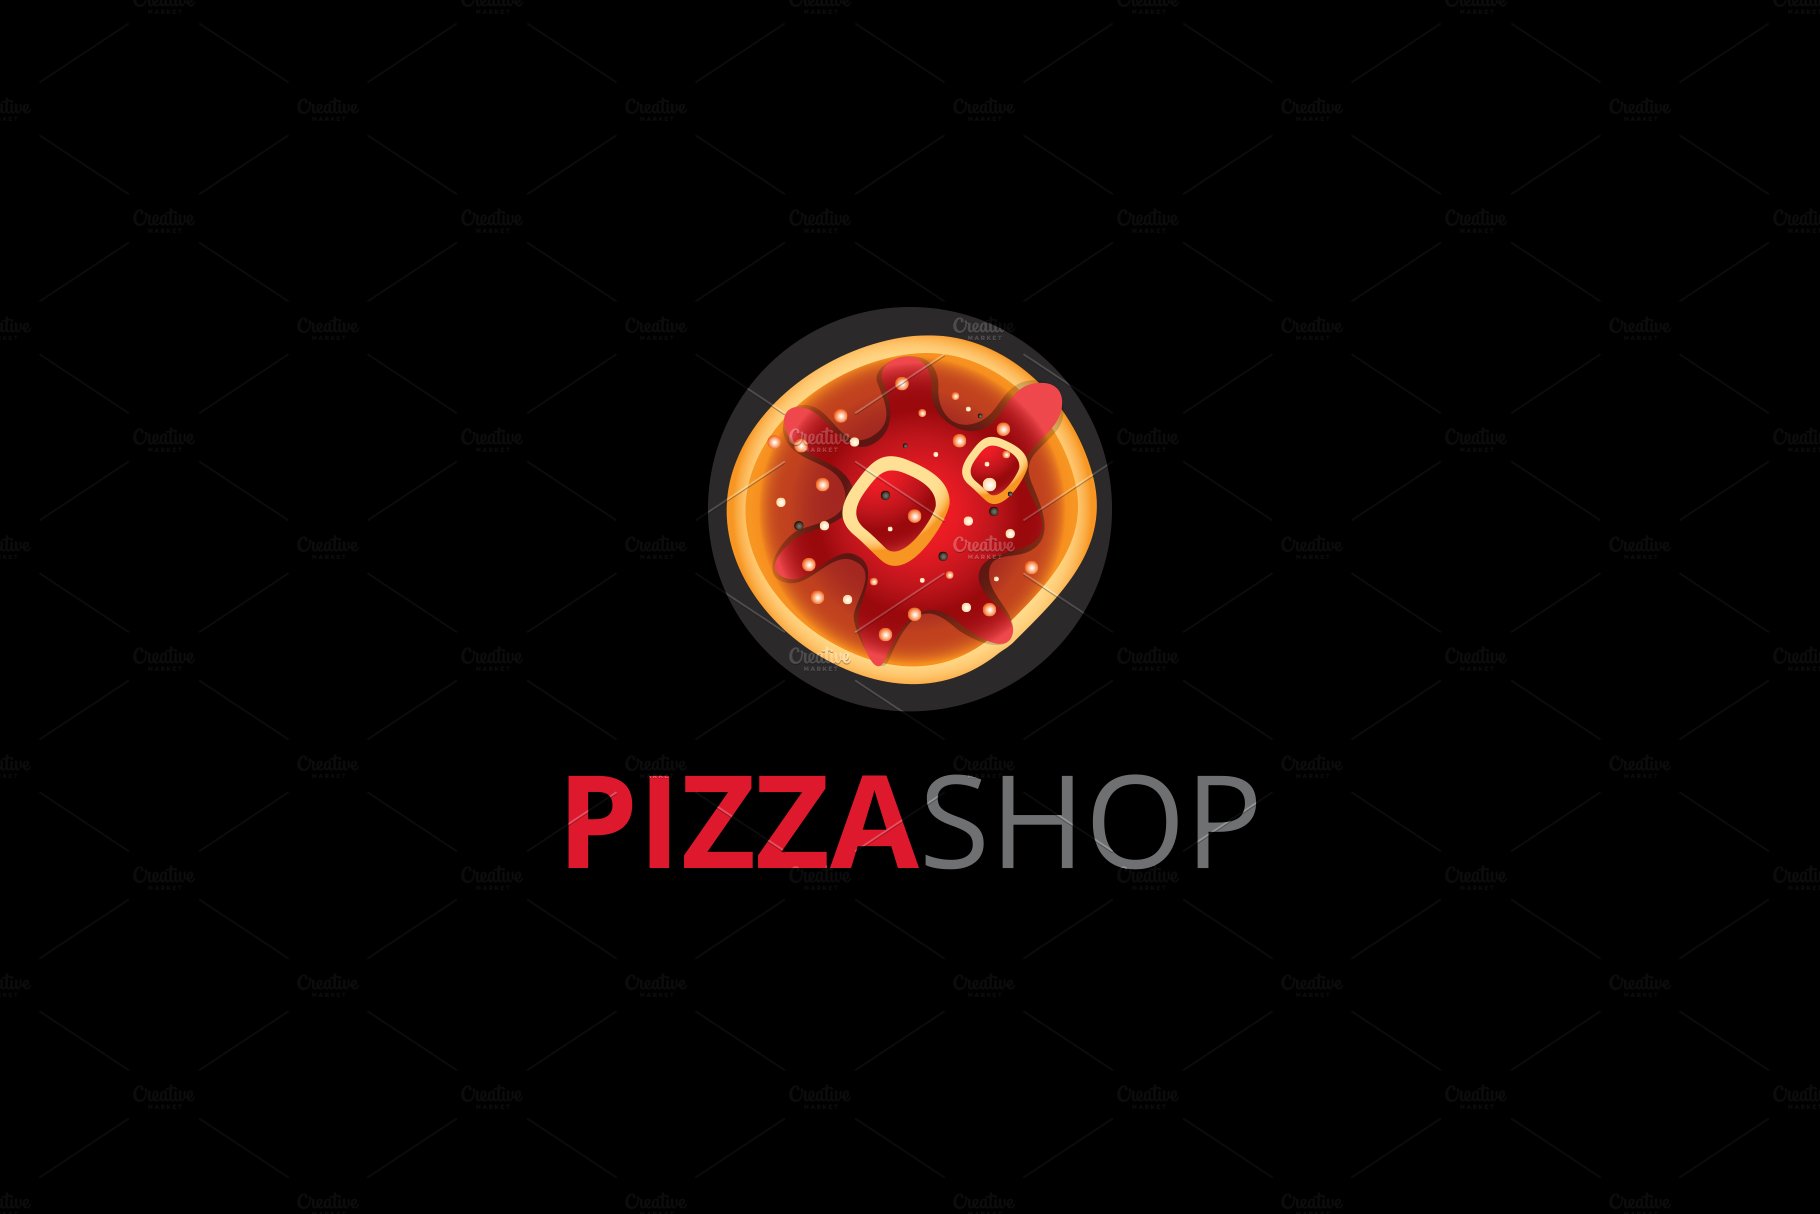 Pizza shop Logo preview image.